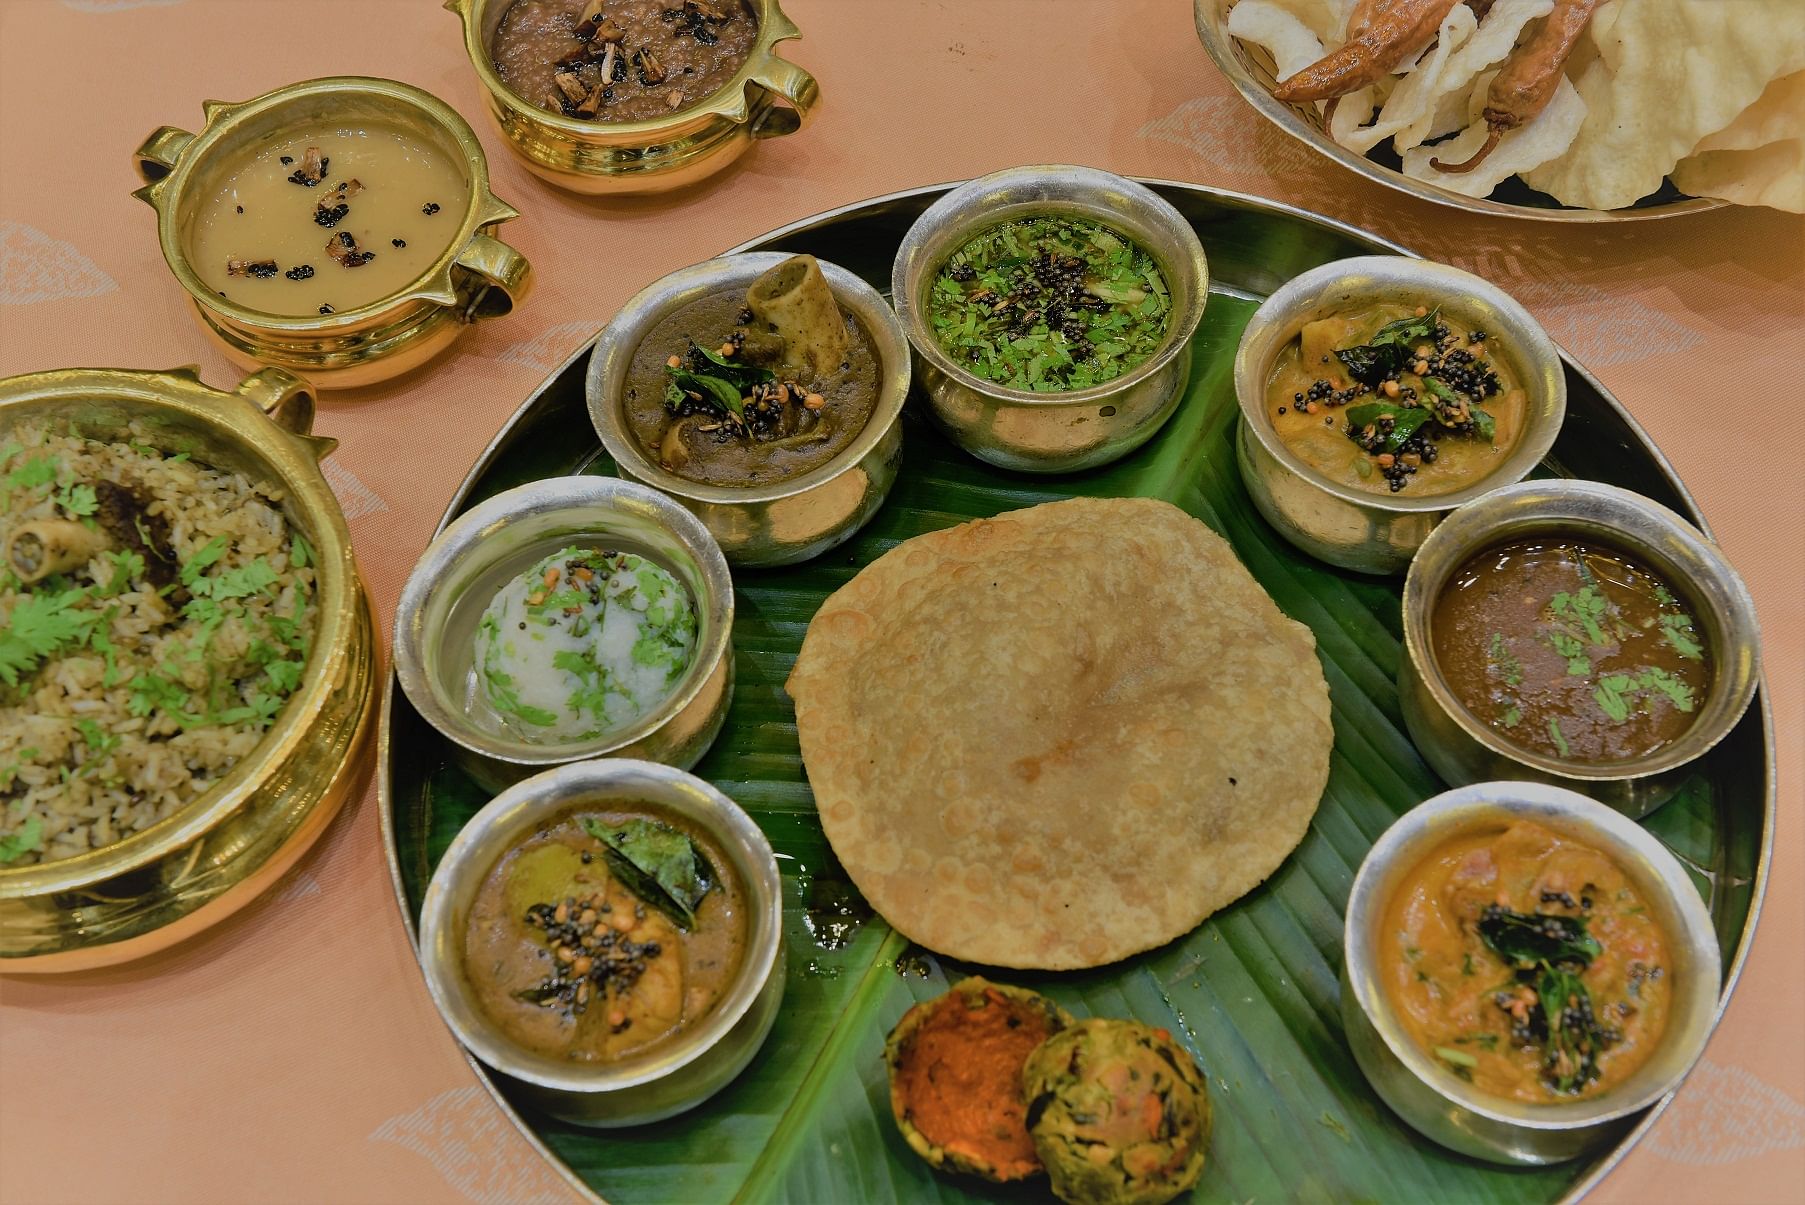 The dishes explored food from the Cholas, Vijayanagar, Sethupati and Kakatiya dynasties.